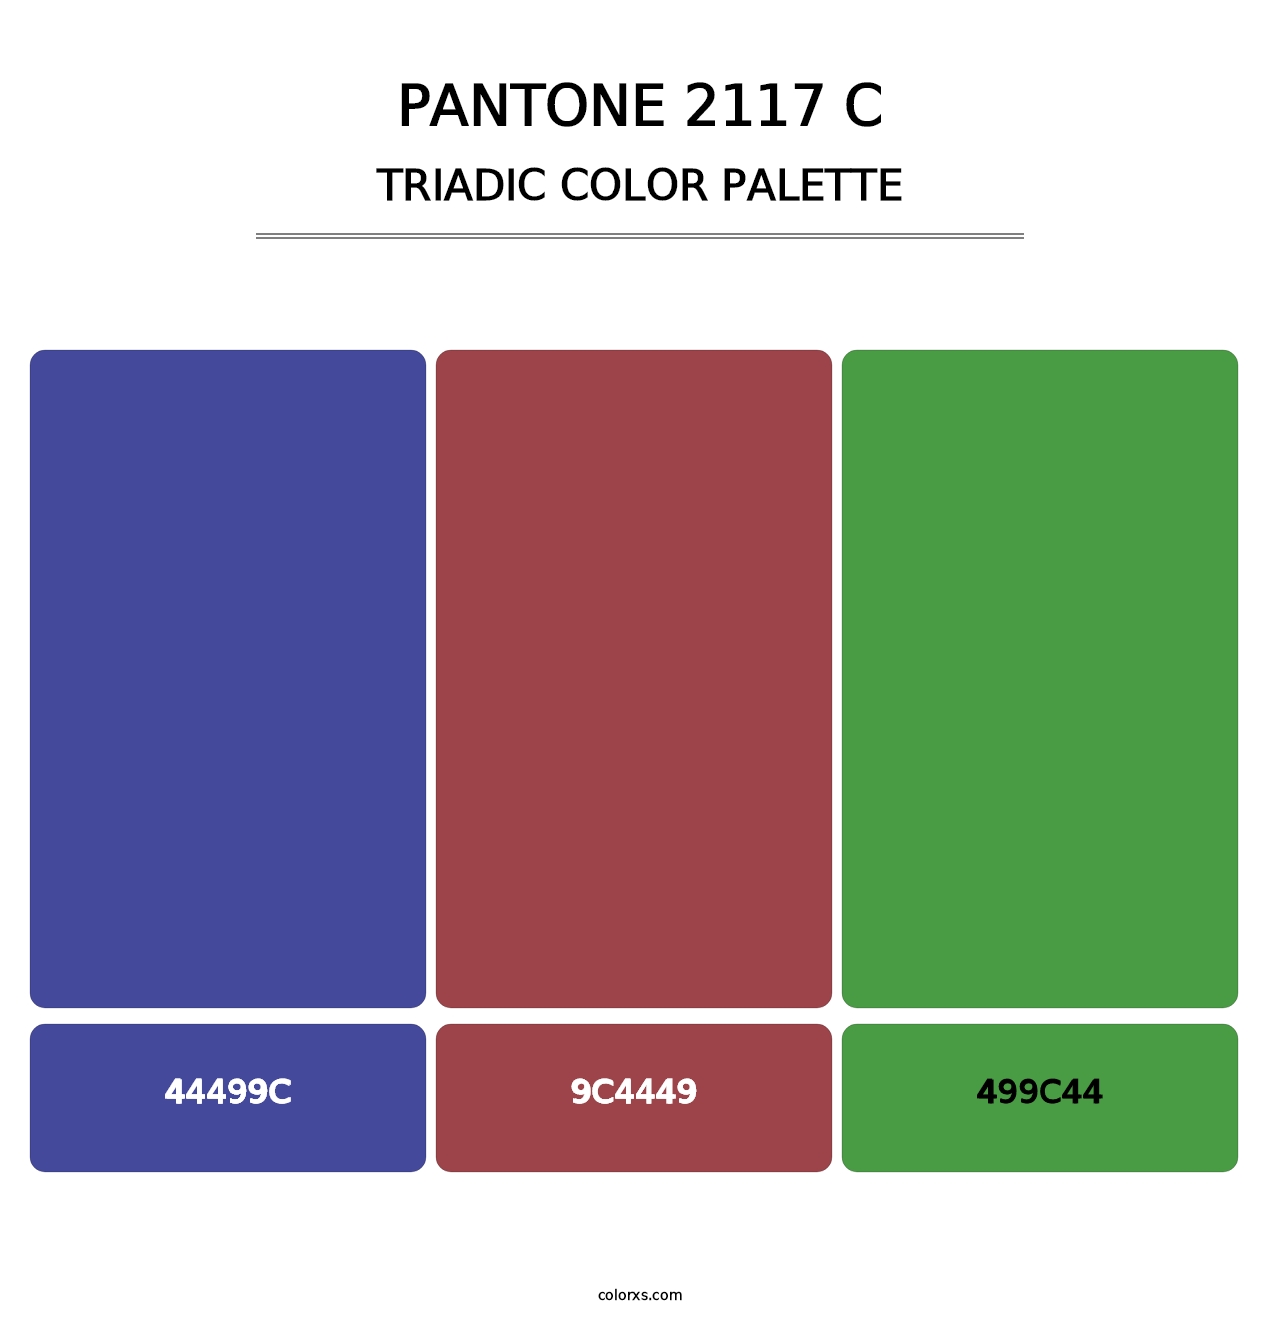 PANTONE 2117 C - Triadic Color Palette